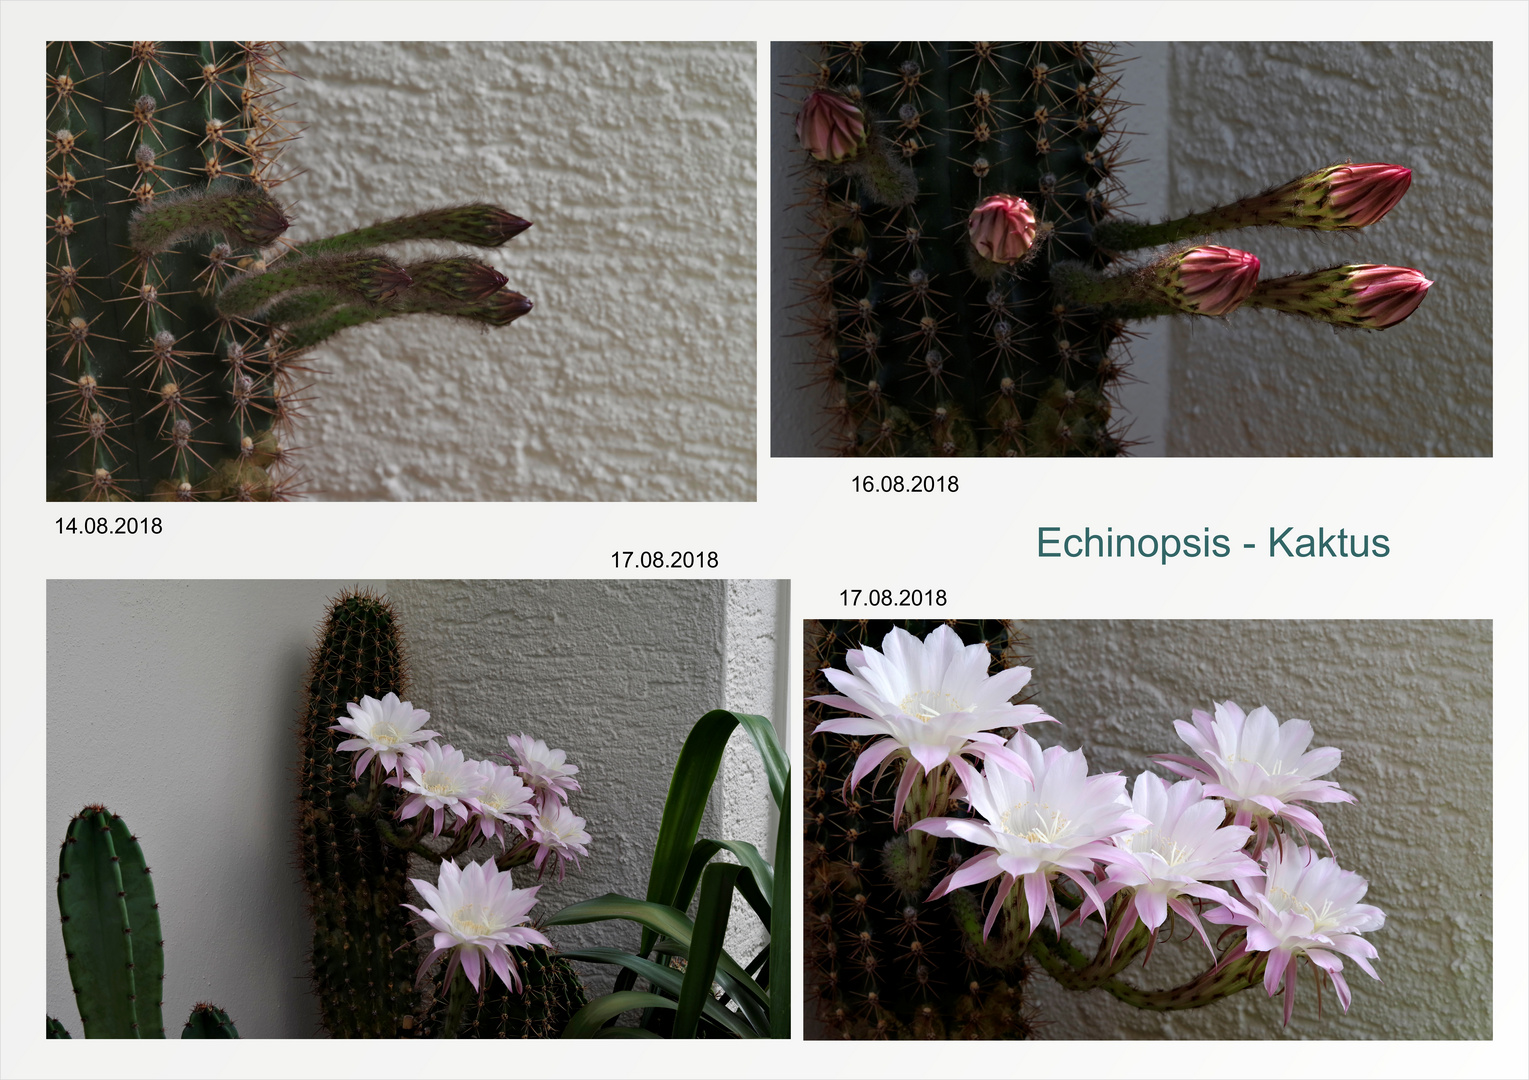 Echinopsis - Kaktus